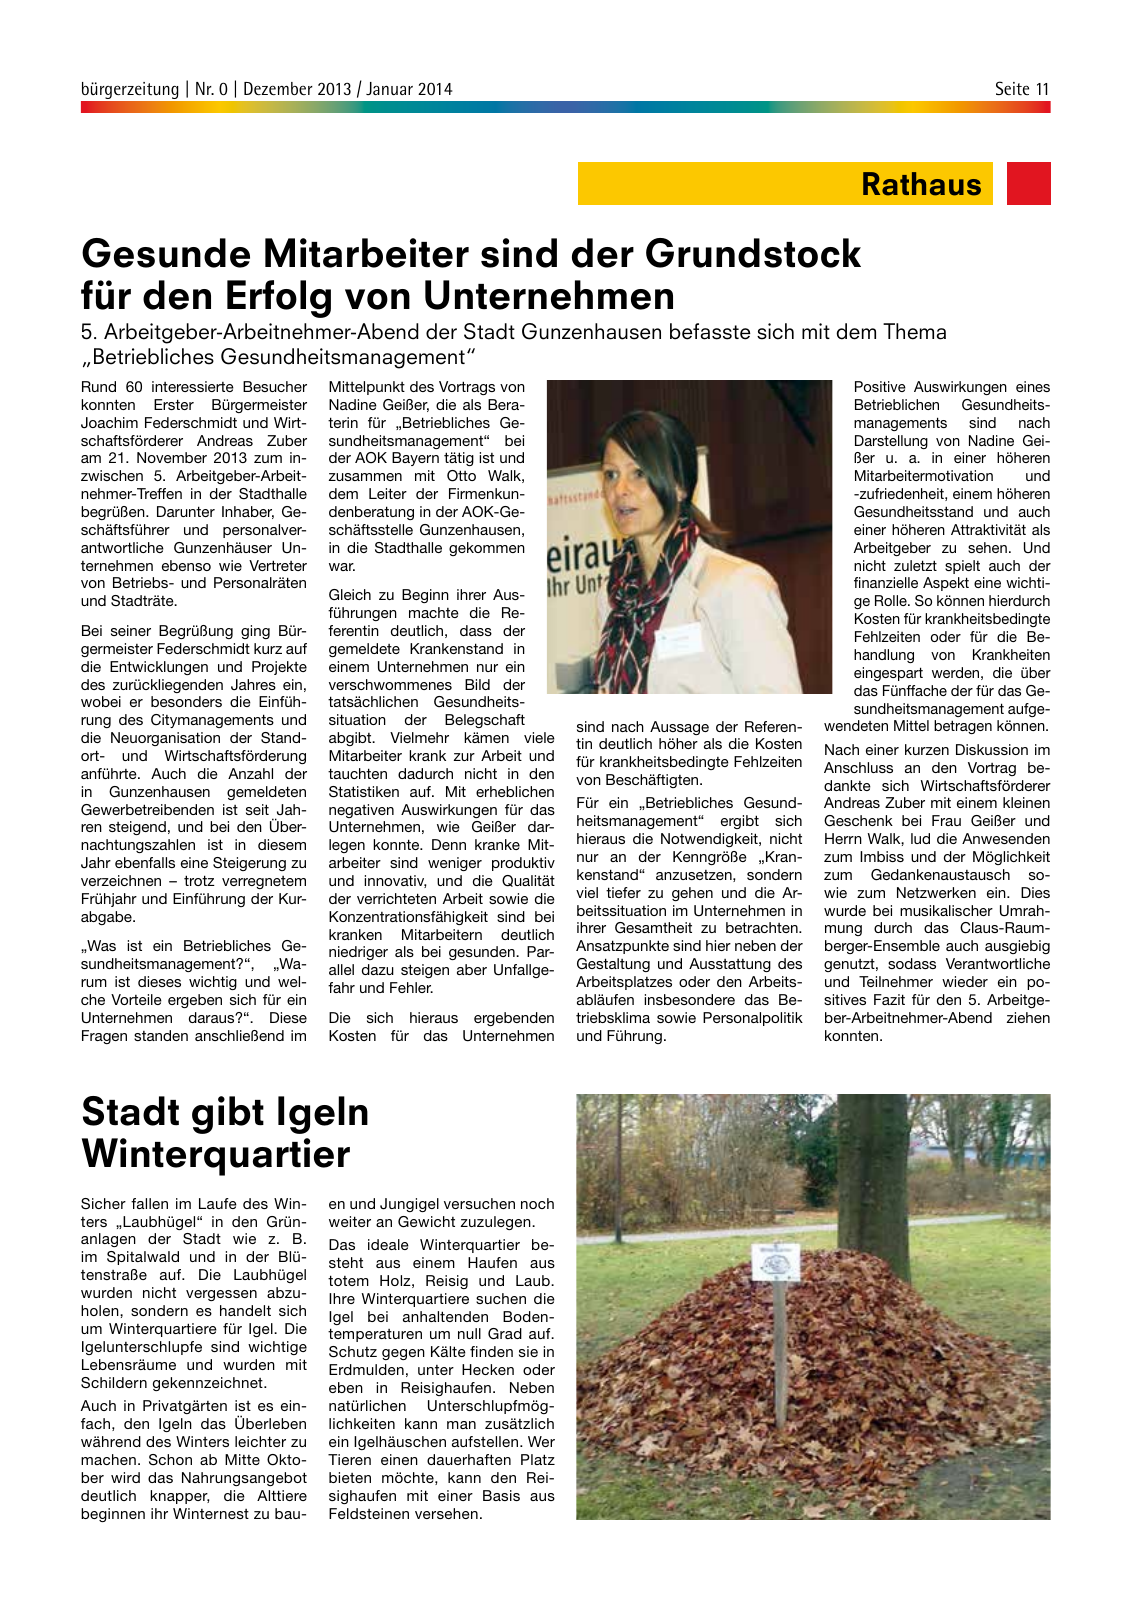 Vorschau bürgerzeitung Nr. 0 Dezember 2013 Januar 2014 Seite 11